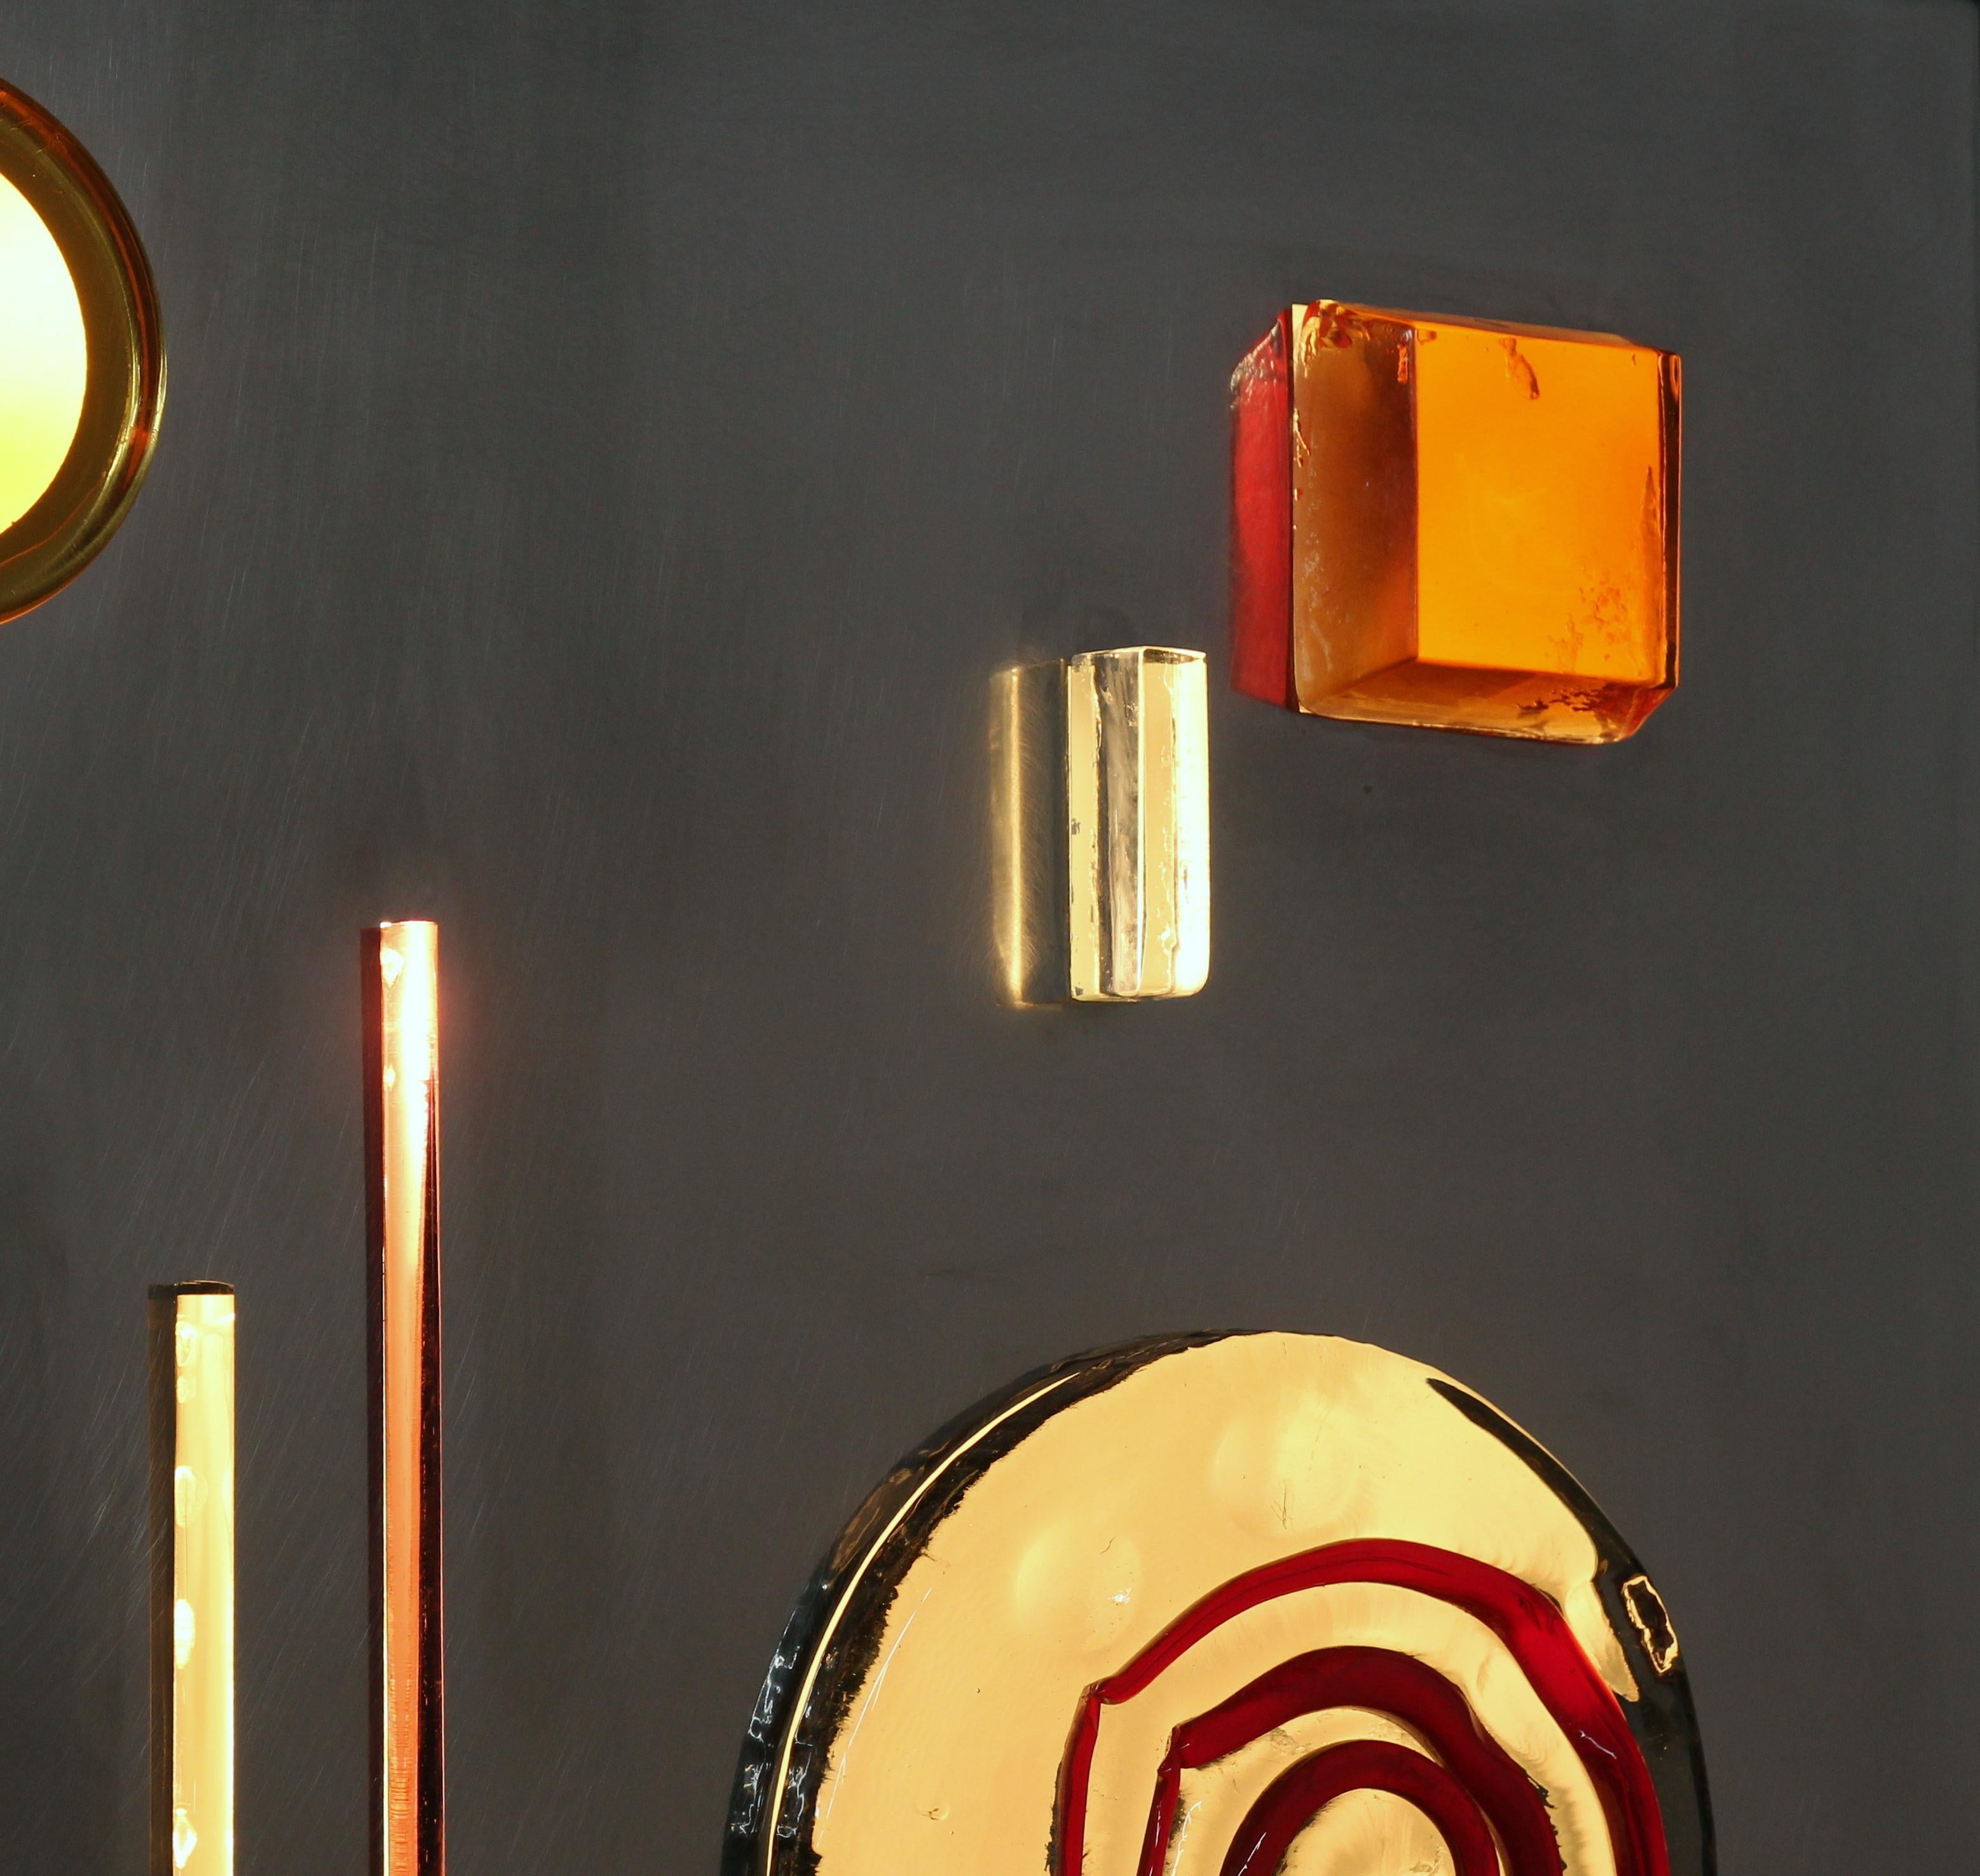 Unico 13 par Esperia
Dimensions : 80 x 80 cm
MATERIAL : Pièces originales en verre de Murano, boîte en acier inoxydable.
Lumière : 3x ampoule E26/E27

